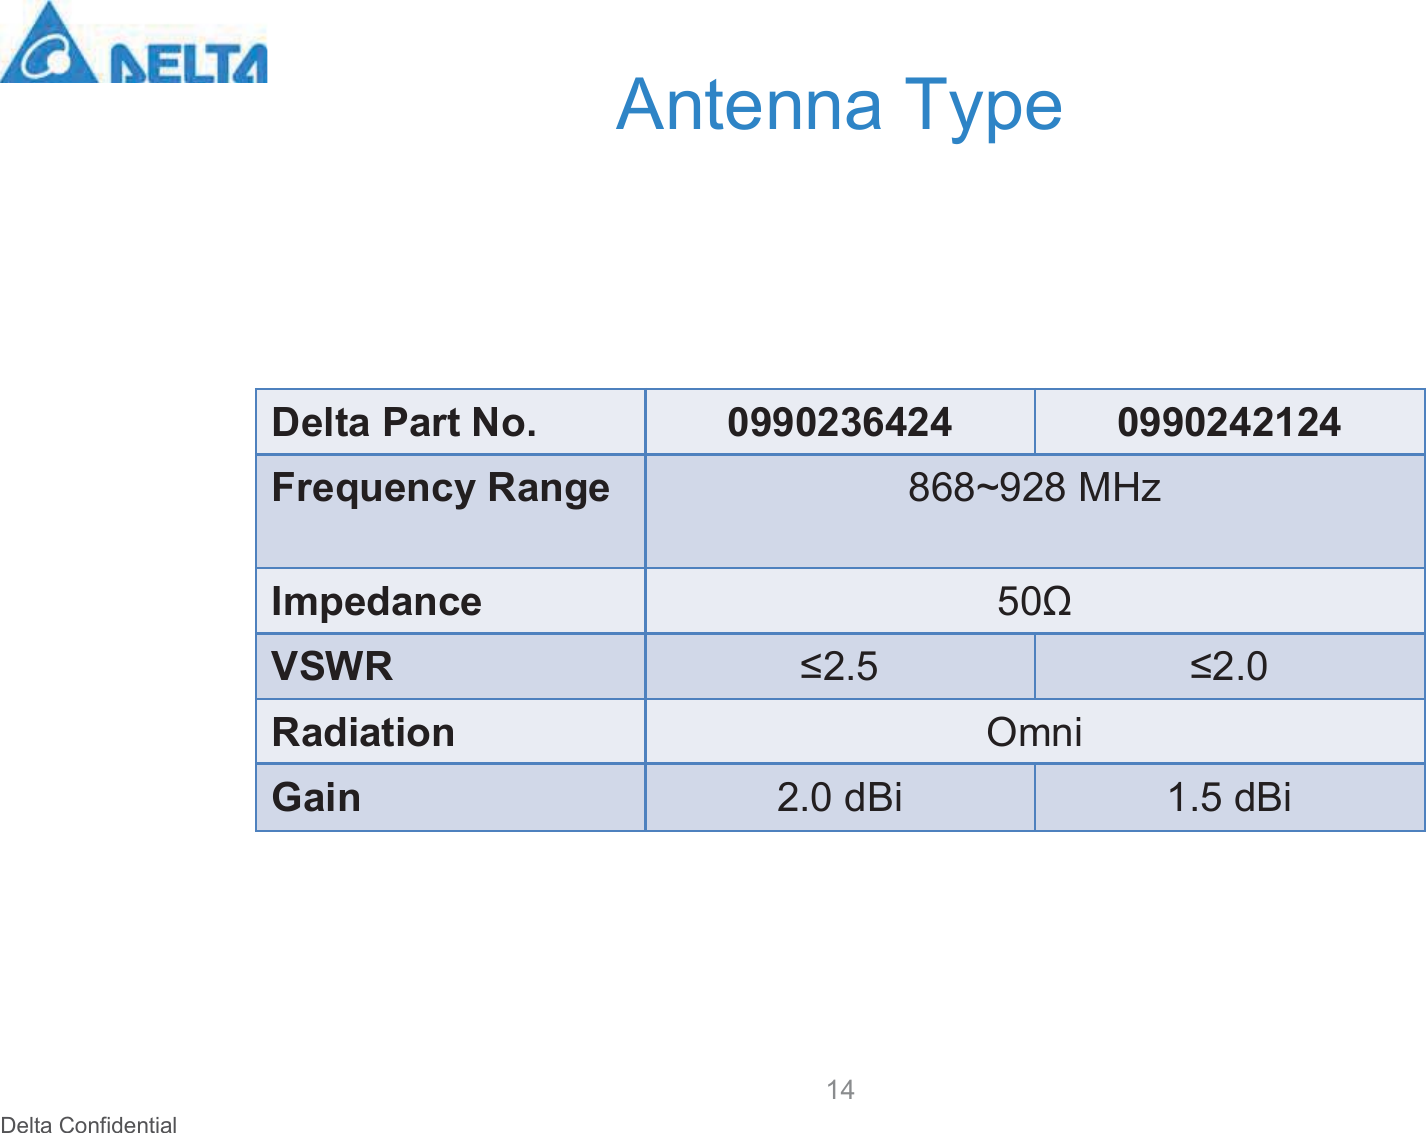 Delta ConfidentialAntenna Type14Delta Part No. 0990236424 0990242124Frequency Range 868~928 MHzImpedance 50ΩVSWR ≤2.5 ≤2.0Radiation OmniGain 2.0 dBi 1.5 dBi